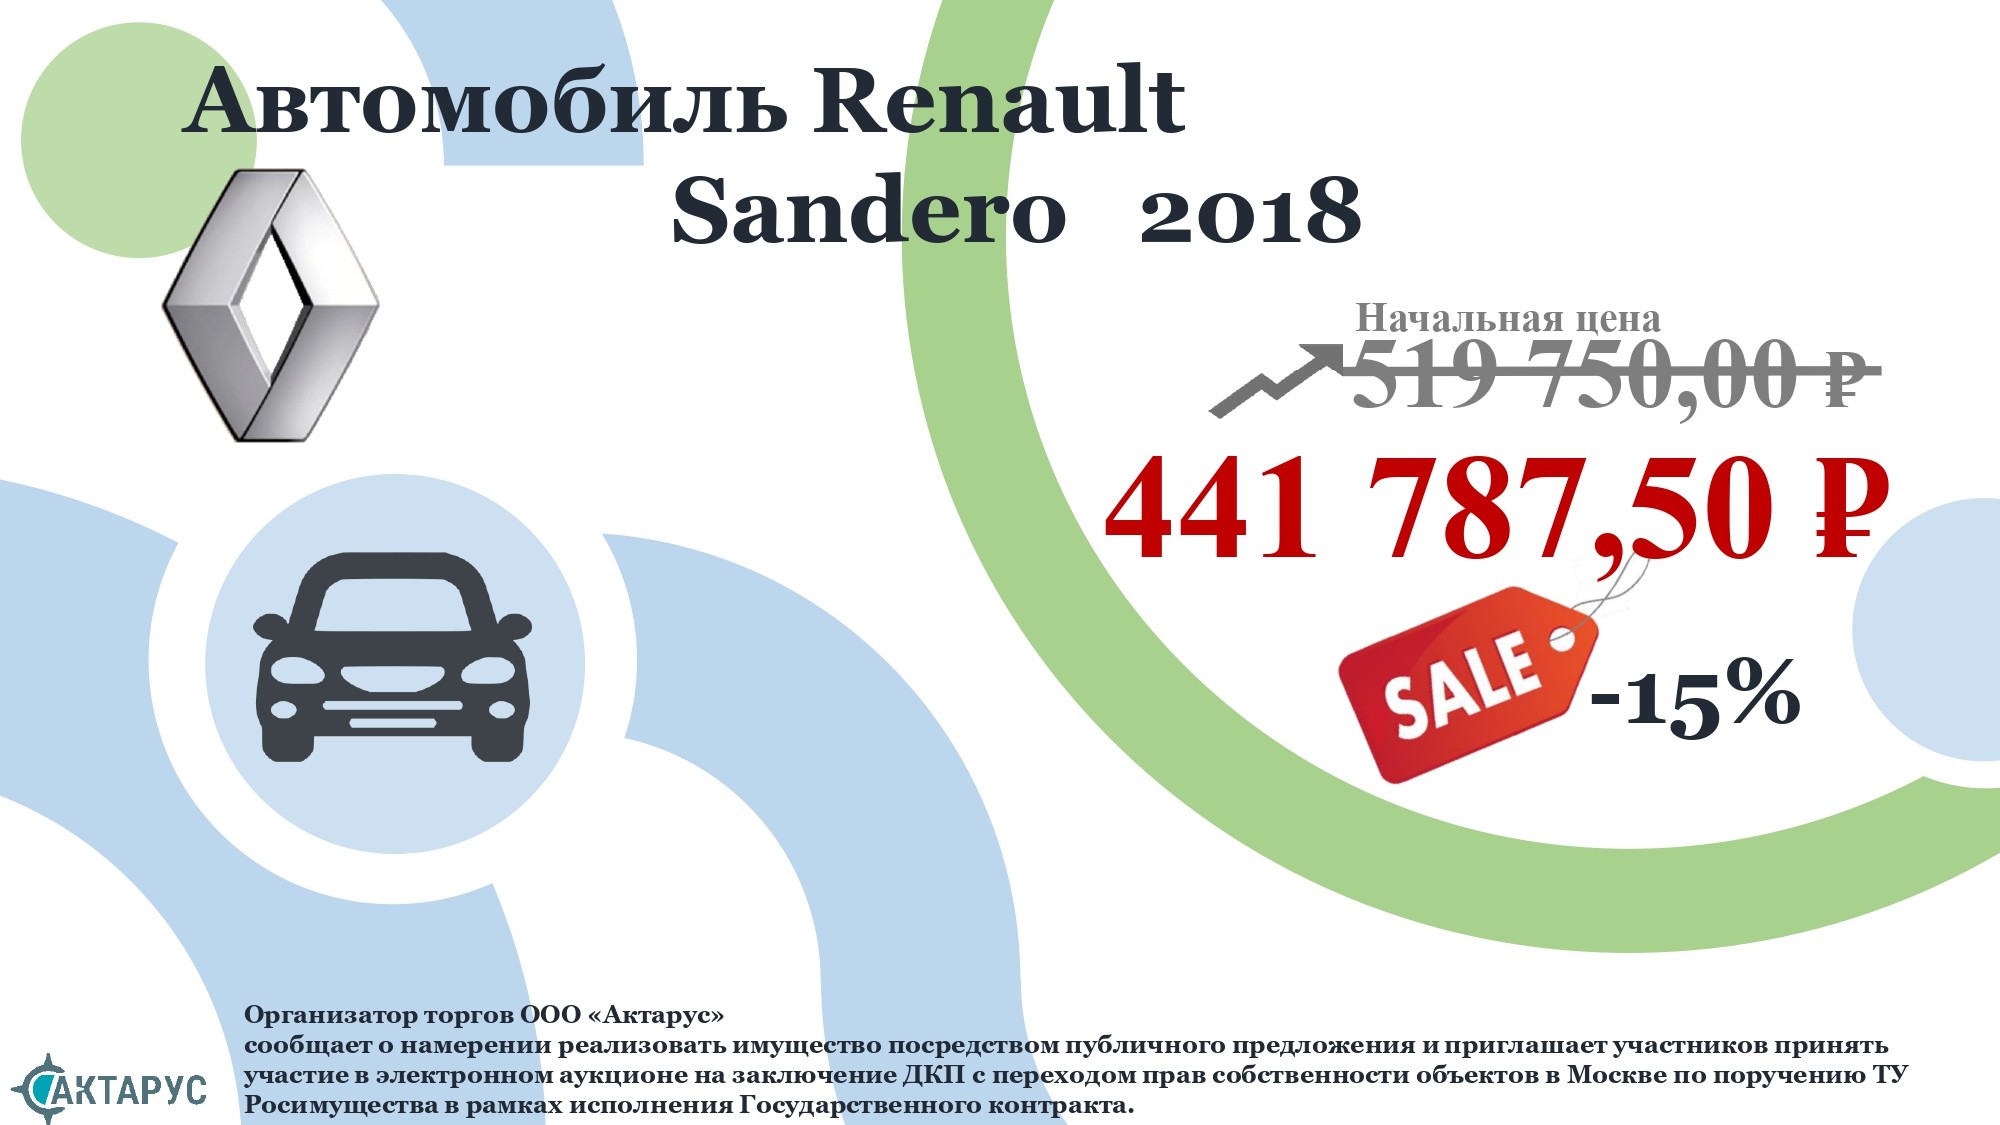 АМТС Renault Sandero, 2018 г.в., г/н О153УА750, VIN: X7L5SRLV461512599 Основание реализации имуществ